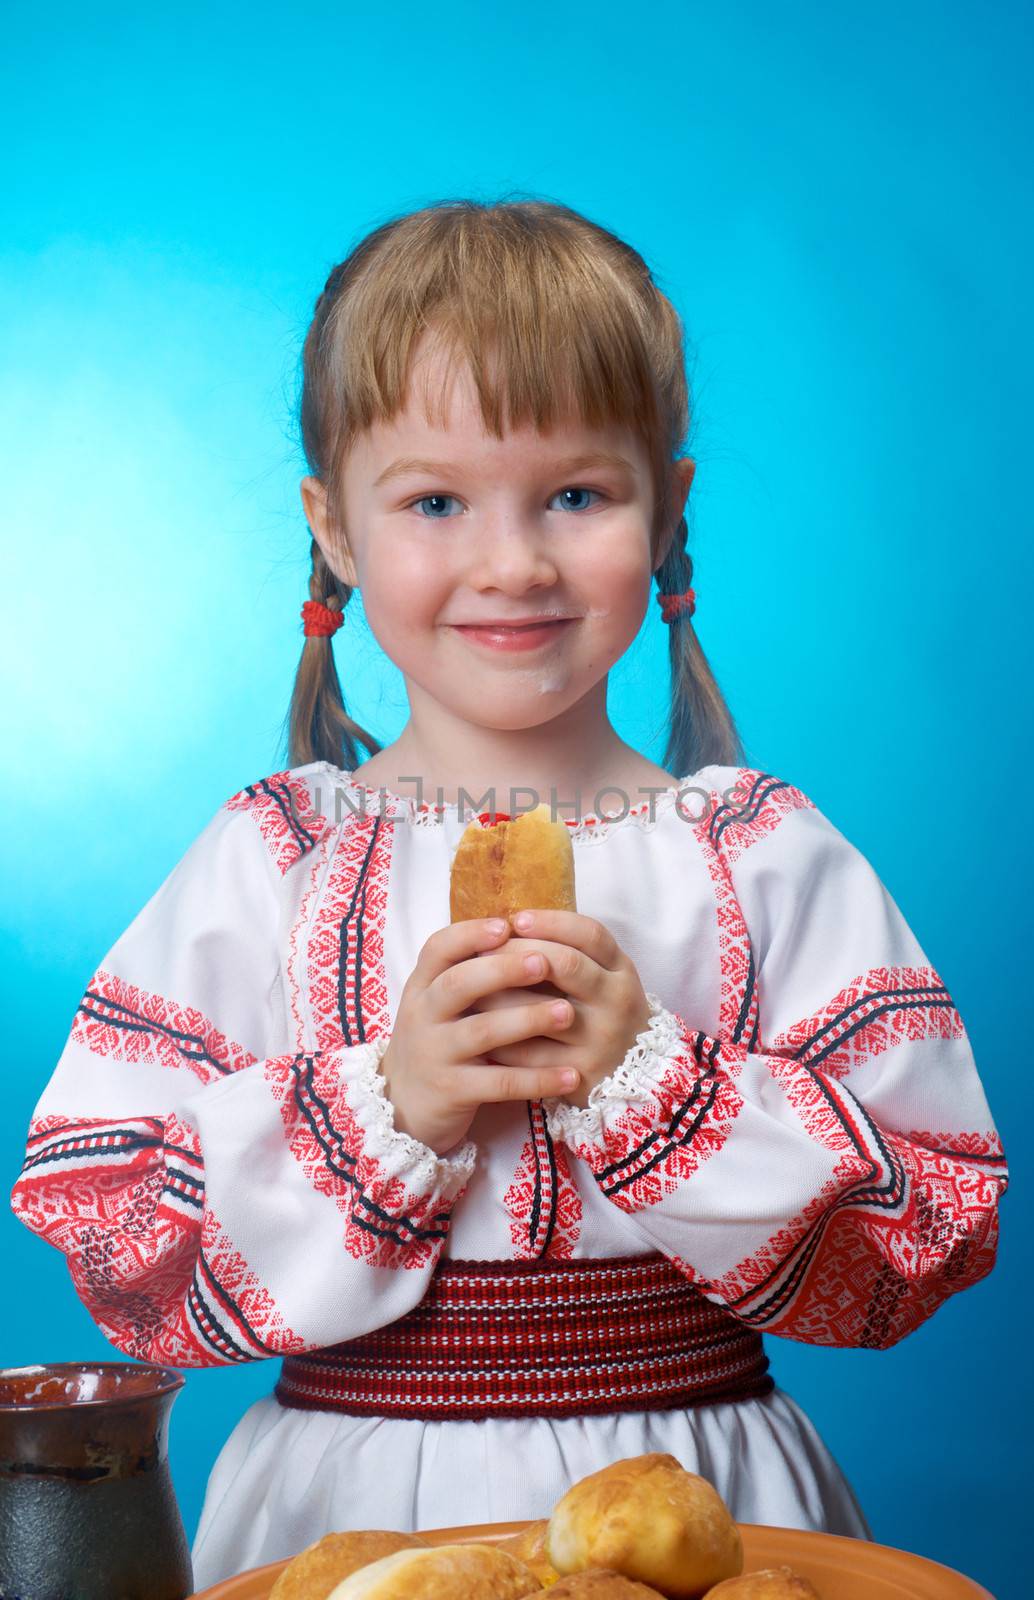 Russian little girl eats homemade pie